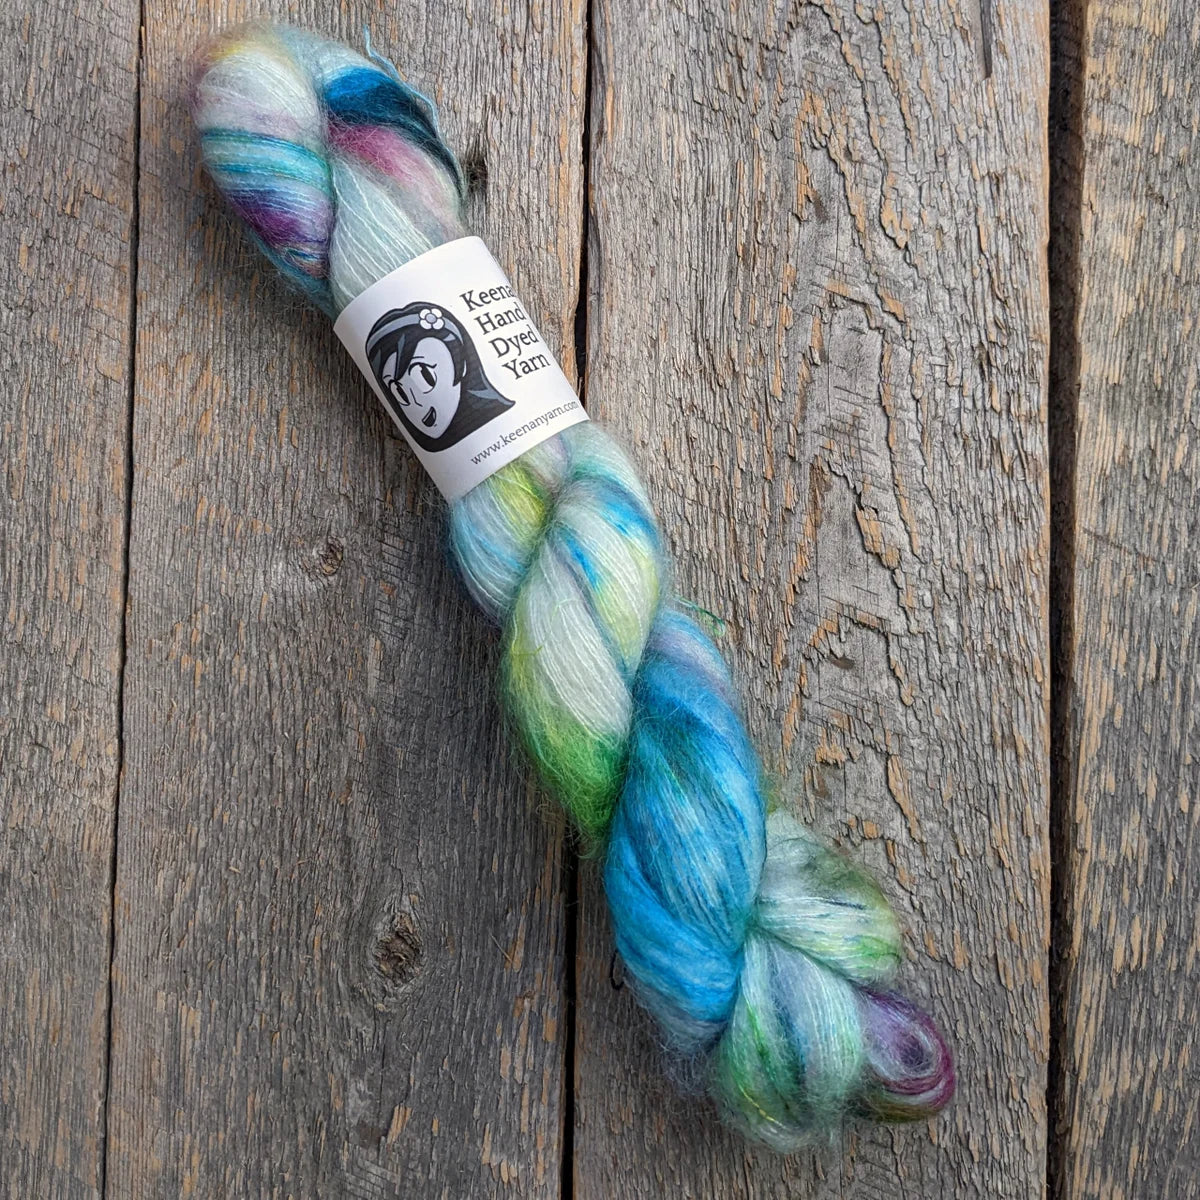 speckled yarn, yarn, lace yarn, twisted skein, silk mohair yarn, Keenan hand dyed